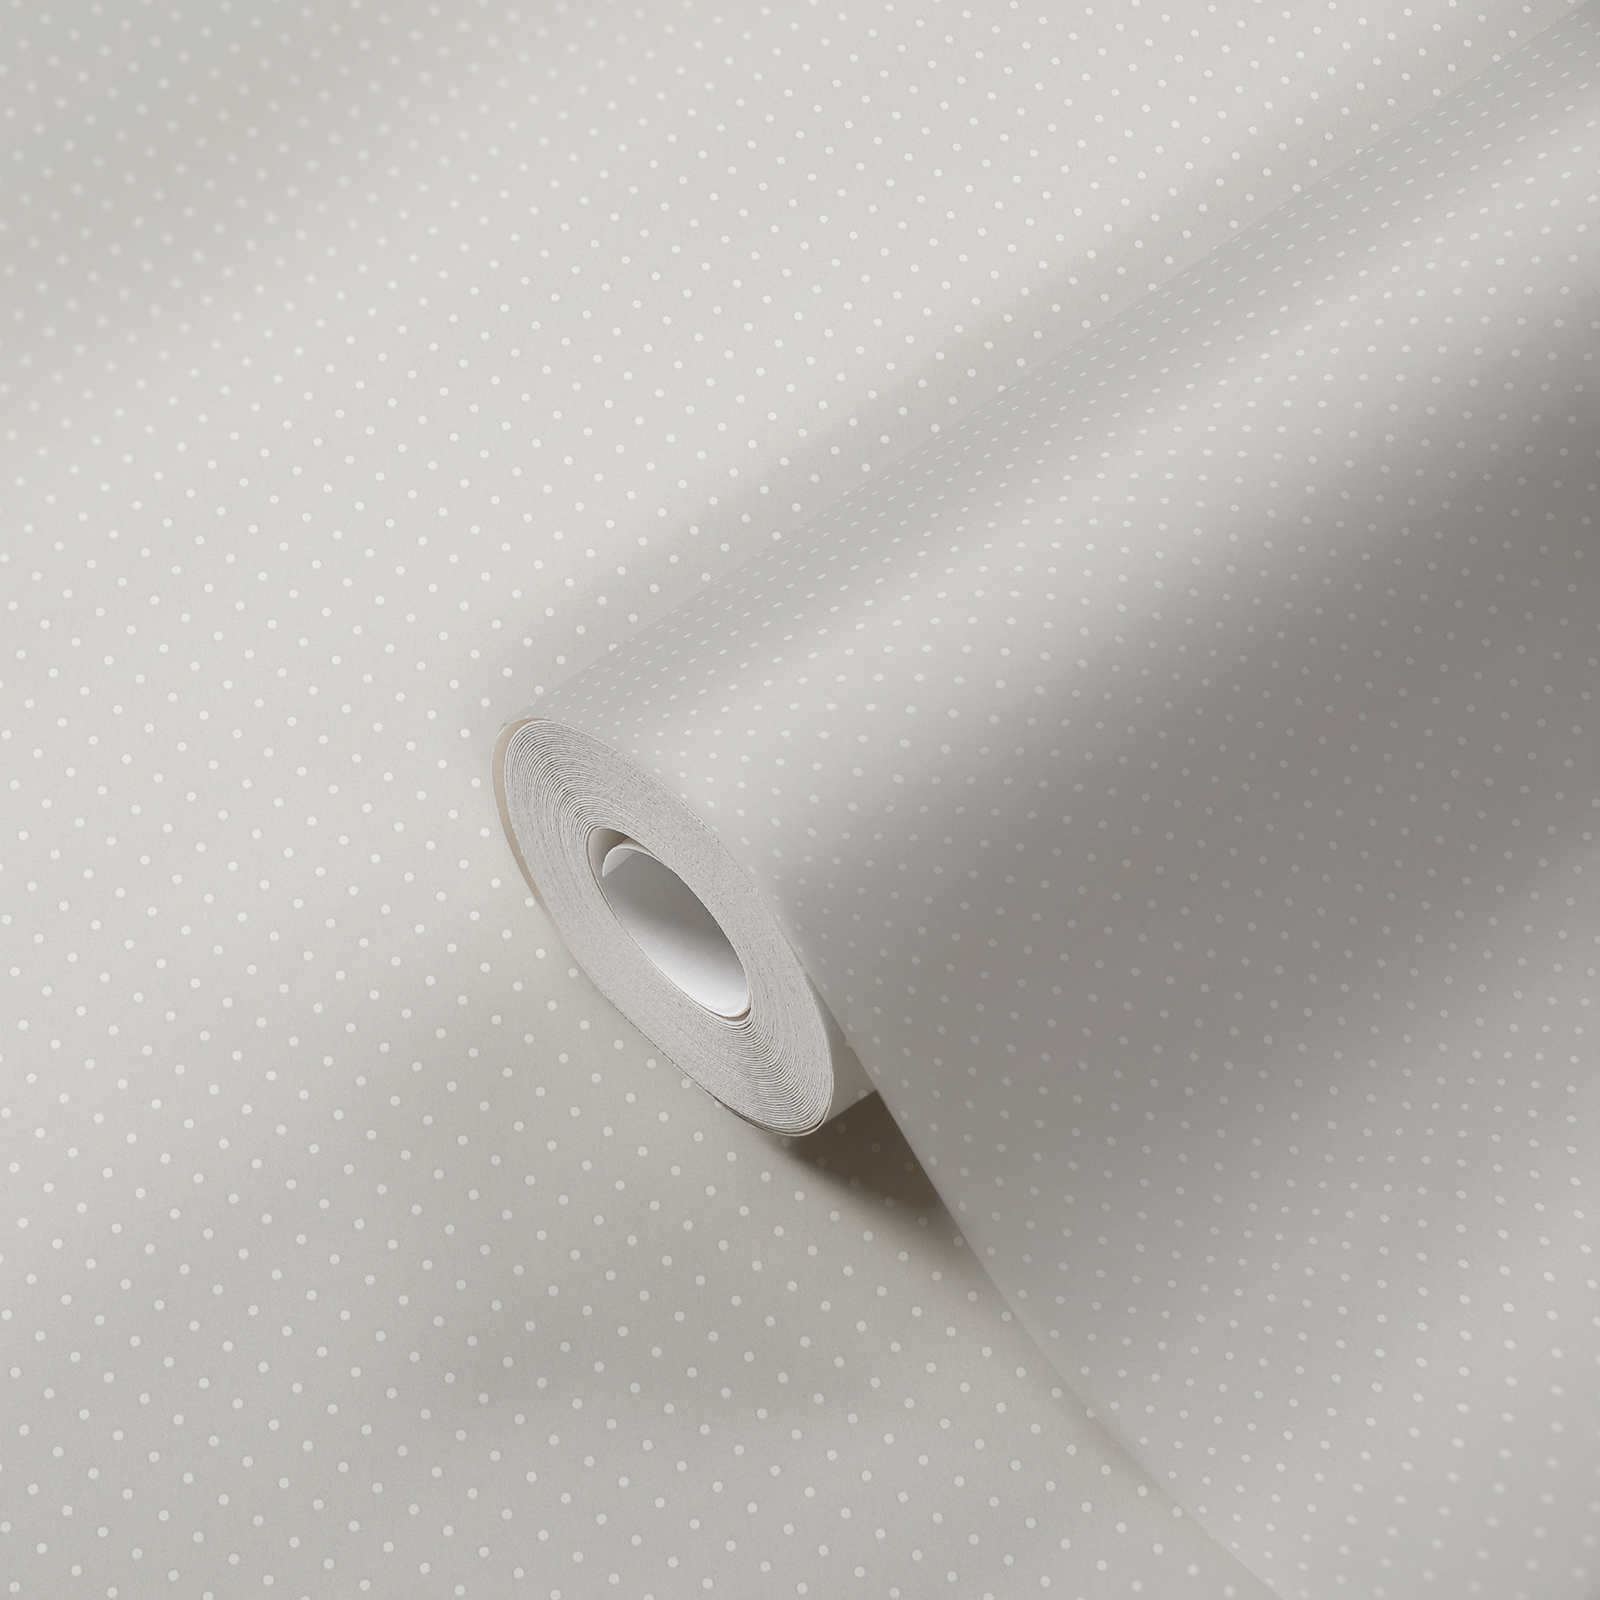             Vliesbehang met klein stippenpatroon - grijs, wit
        